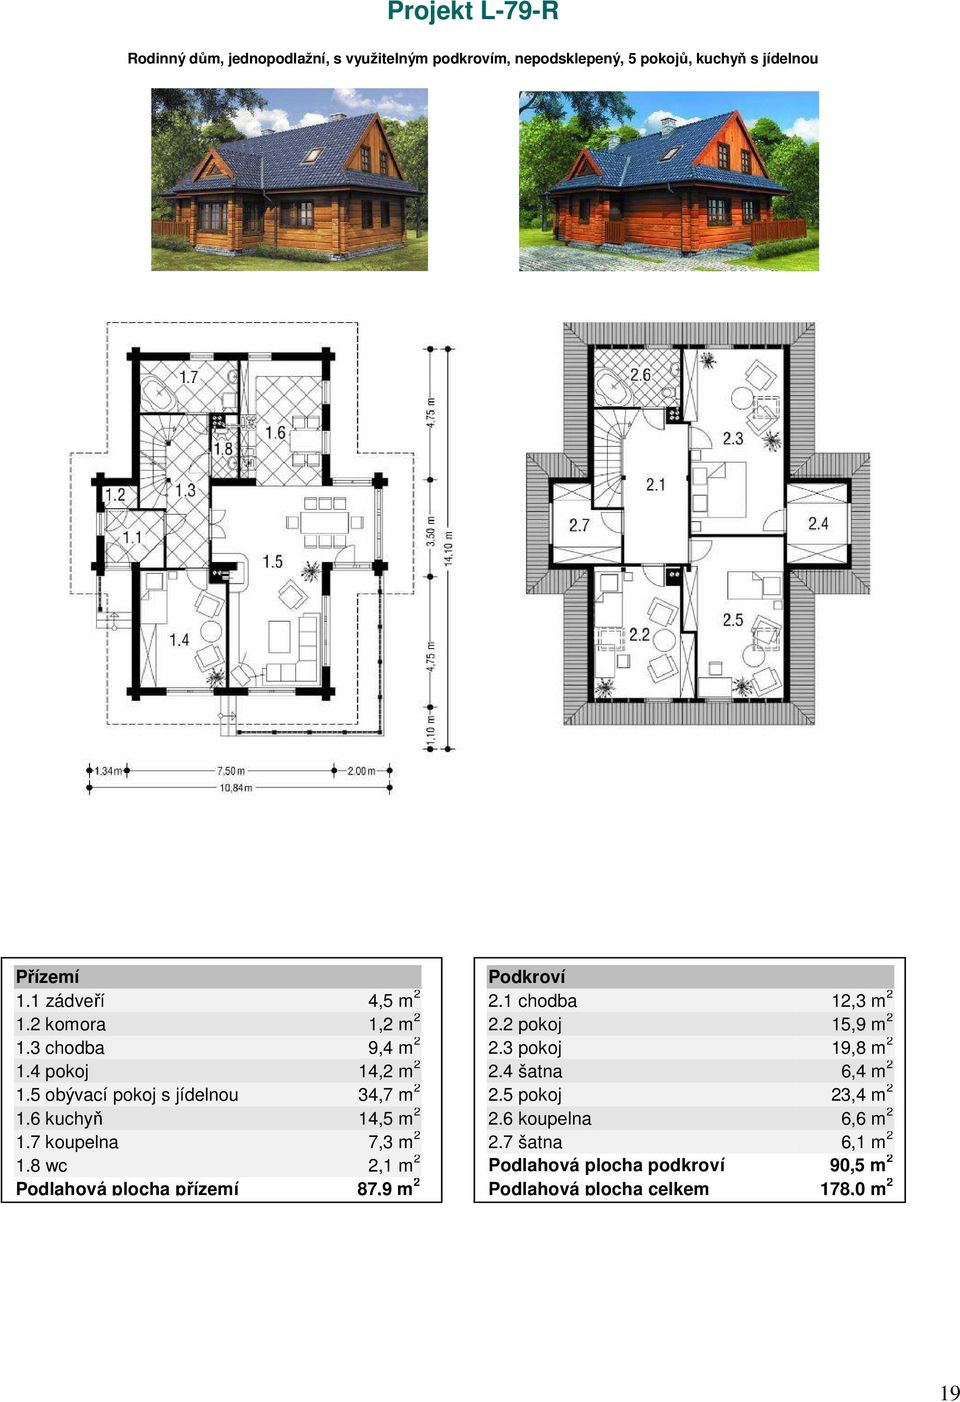 6 kuchyň 14,5 m 2 1.7 koupelna 7,3 m 2 1.8 wc 2,1 m 2 Podlahová plocha přízemí 87,9 m 2 2.1 chodba 12,3 m 2 2.2 pokoj 15,9 m 2 2.